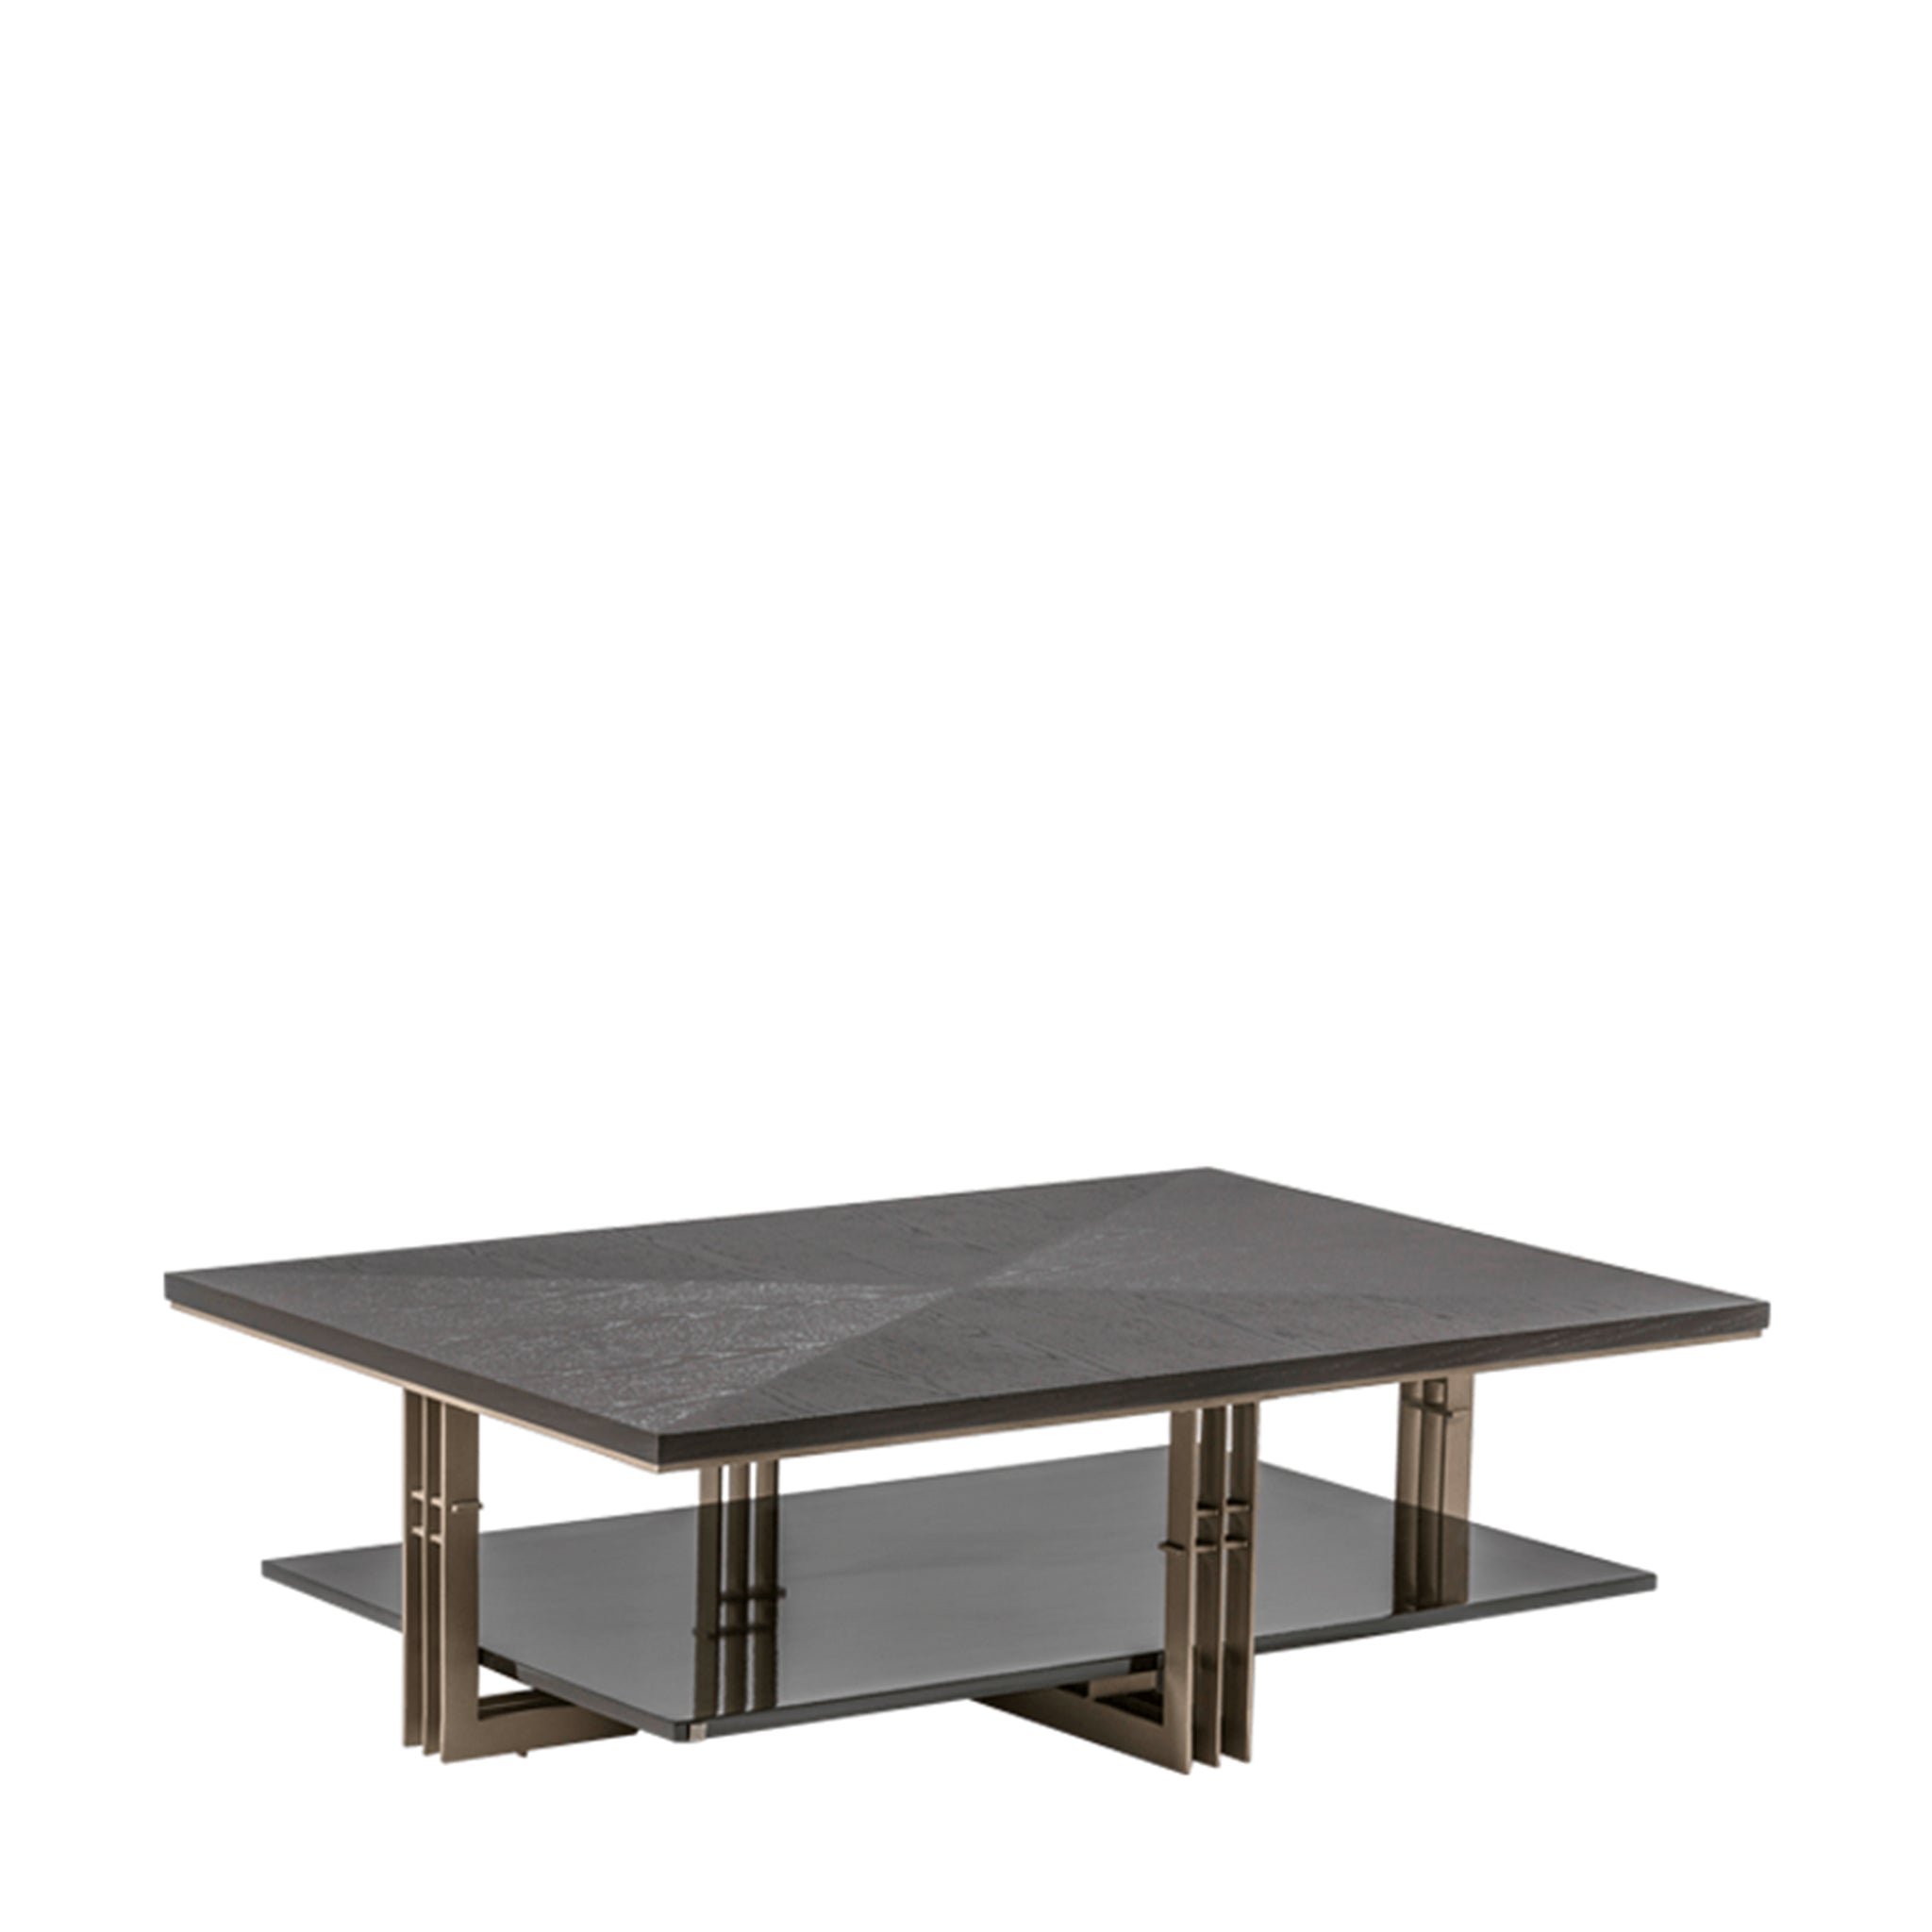 adriana hoyos bolero living table set sets 